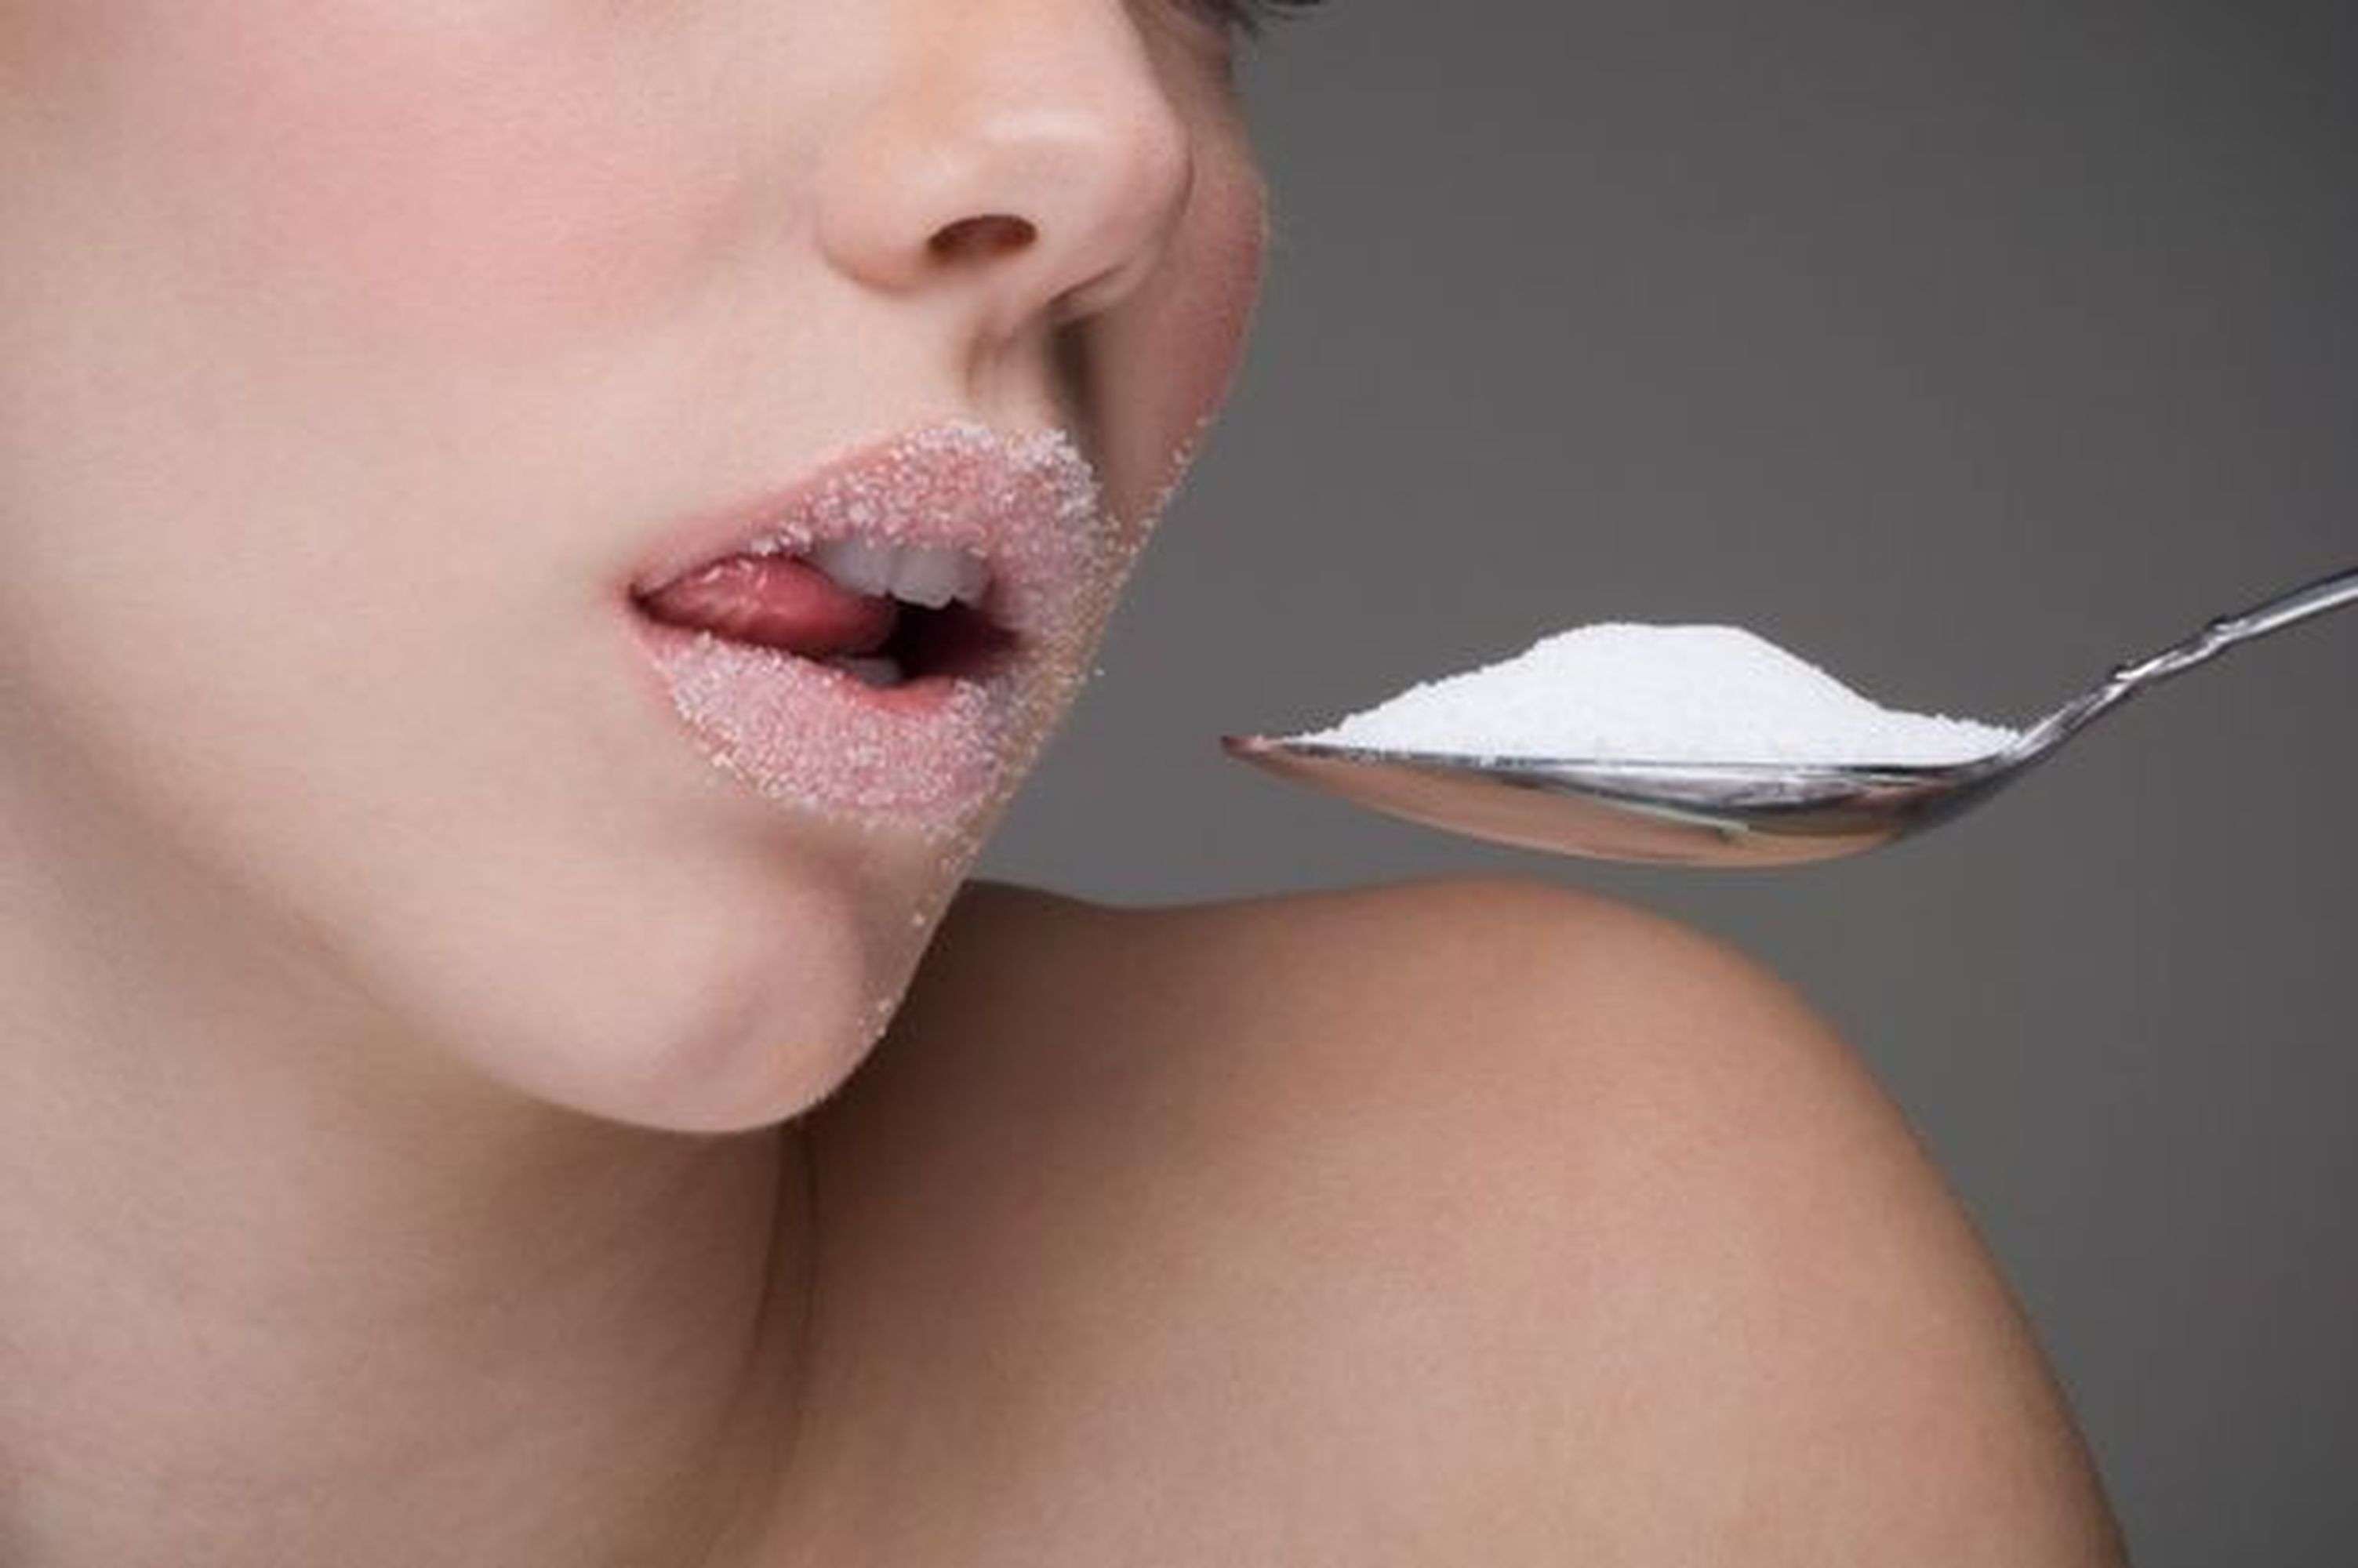 साल में 18 किलो चीनी खा जाते हैं हम, सेहत के लिए है बेहद खतरनाक